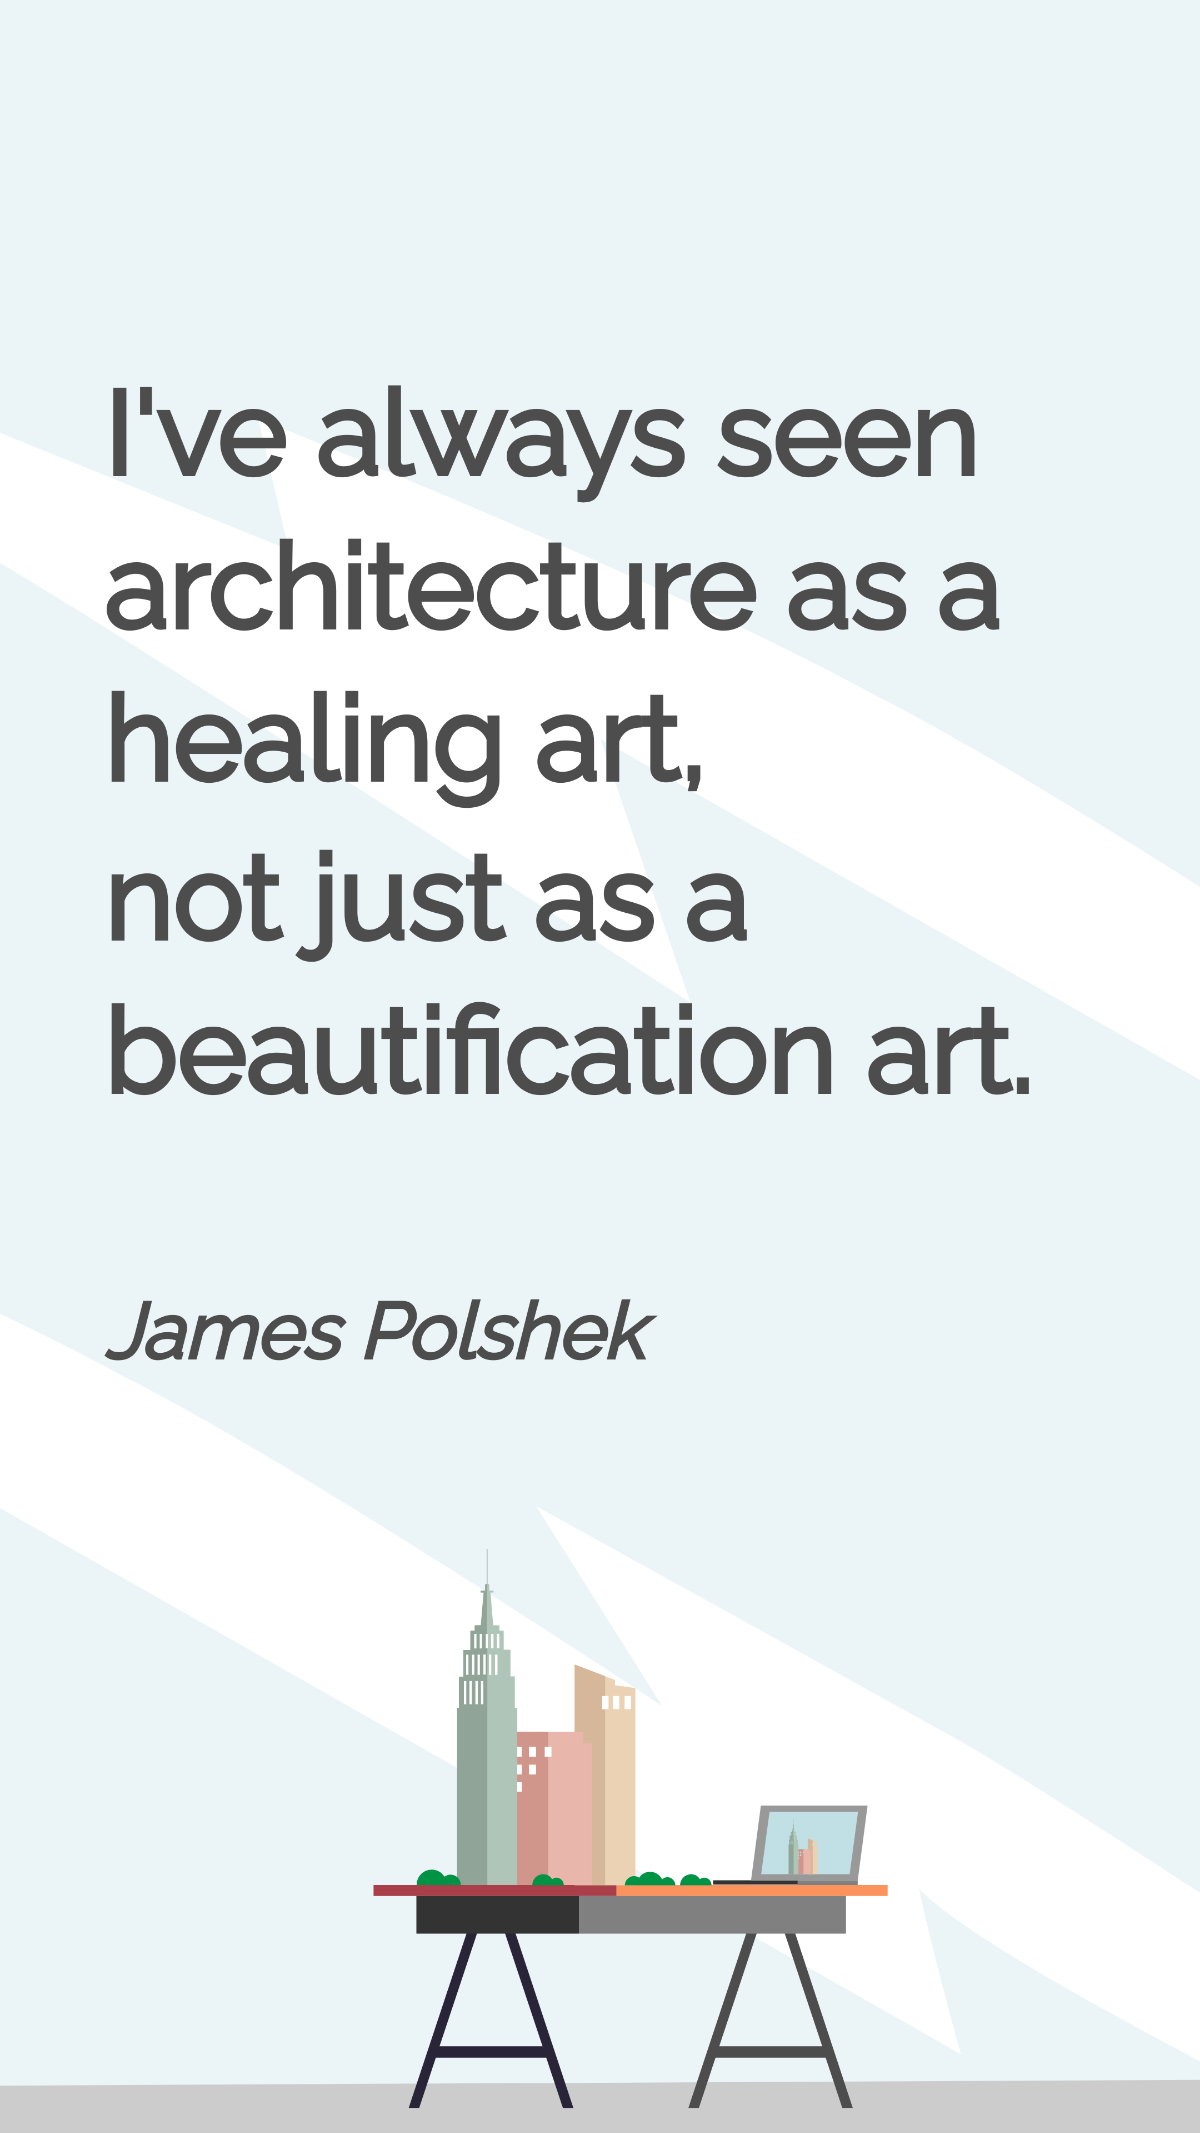 James Polshek - I've always seen architecture as a healing art, not just as a beautification art.